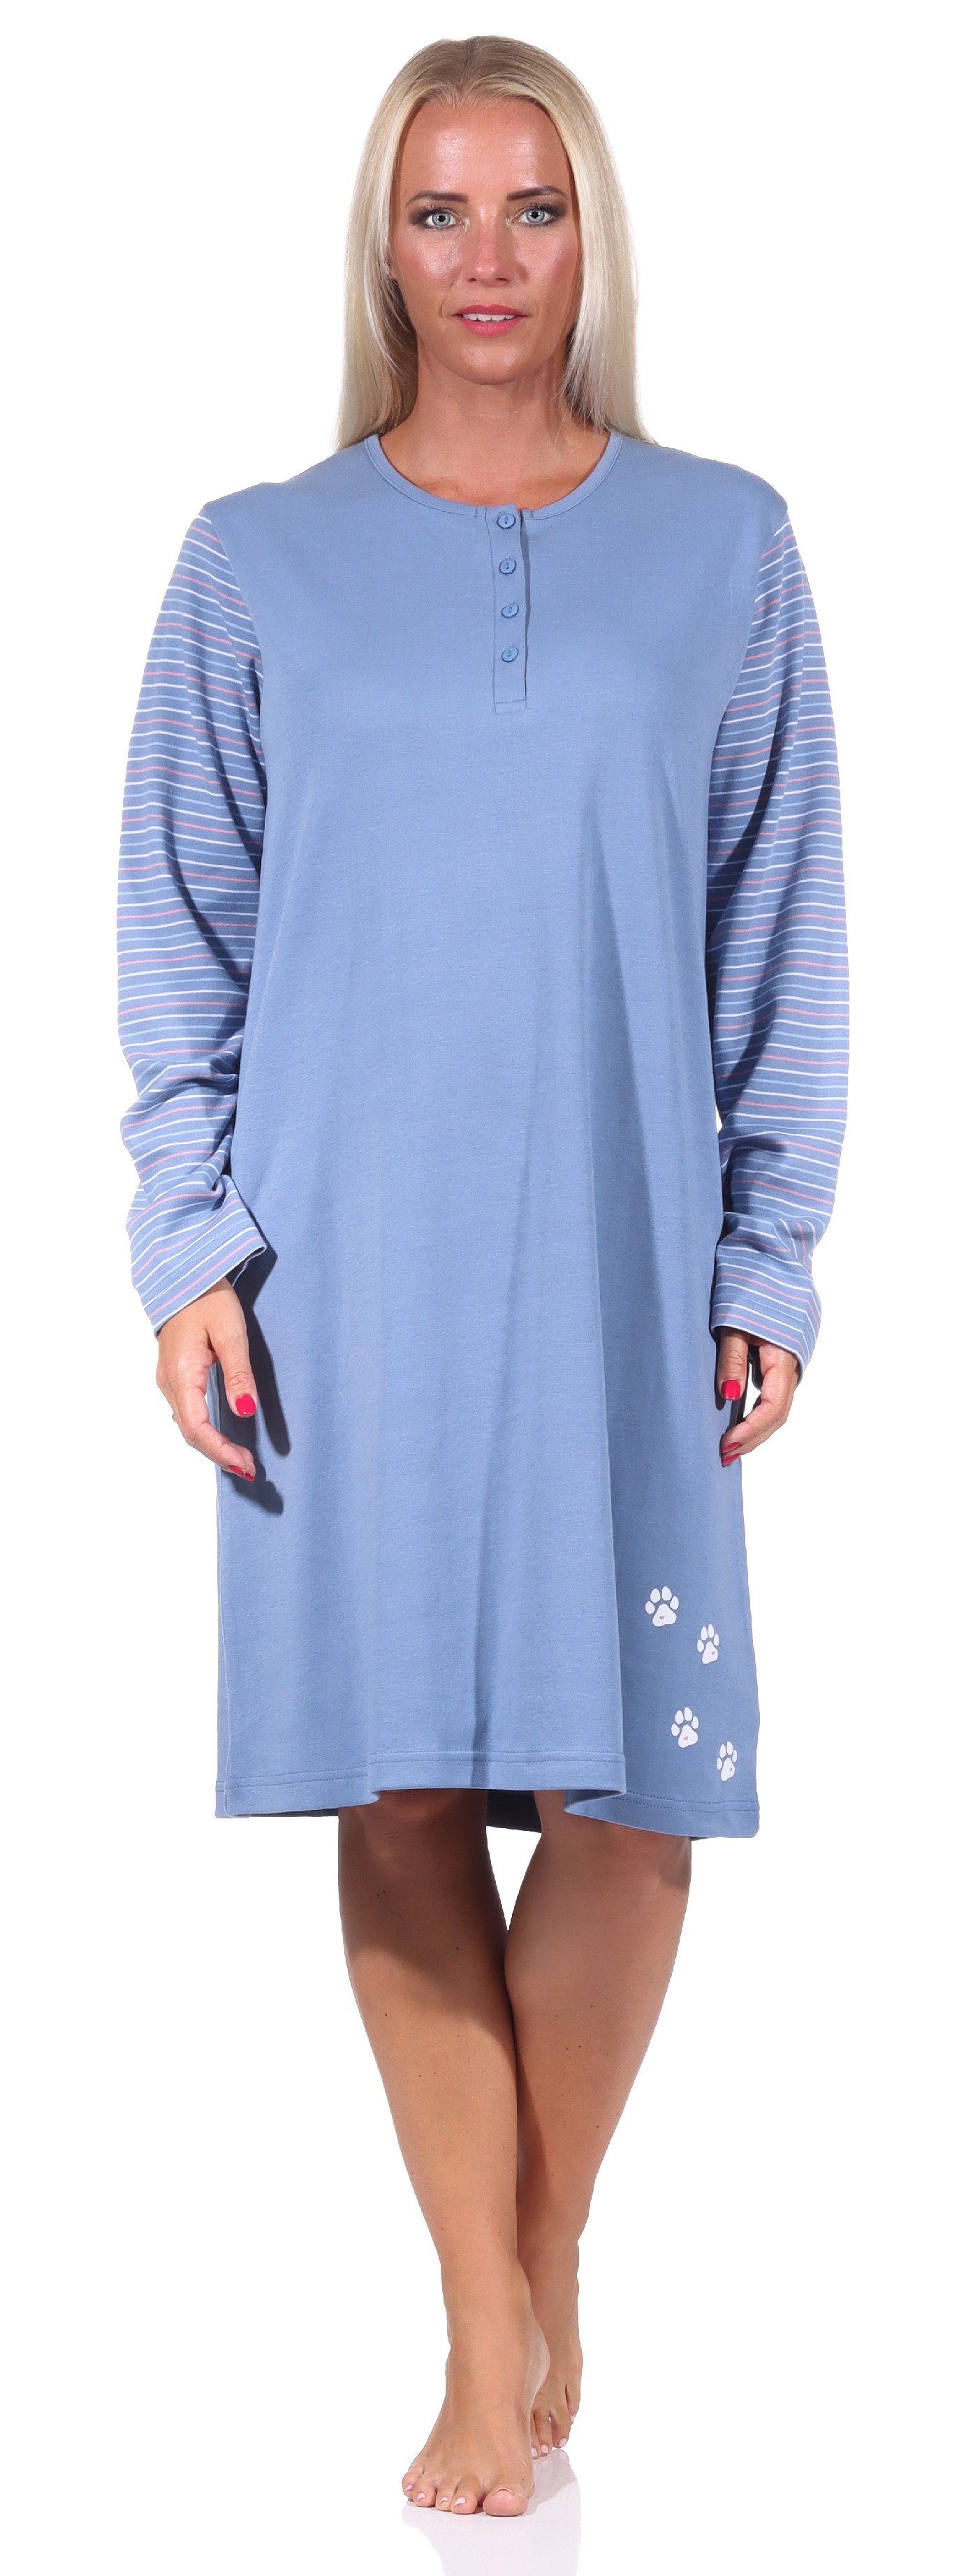 Normann Nachthemd »Damen Nachthemd langarm in Kuschel Interlock Qualität  mit niedlichen Motiv - 212 213 226« online kaufen | OTTO